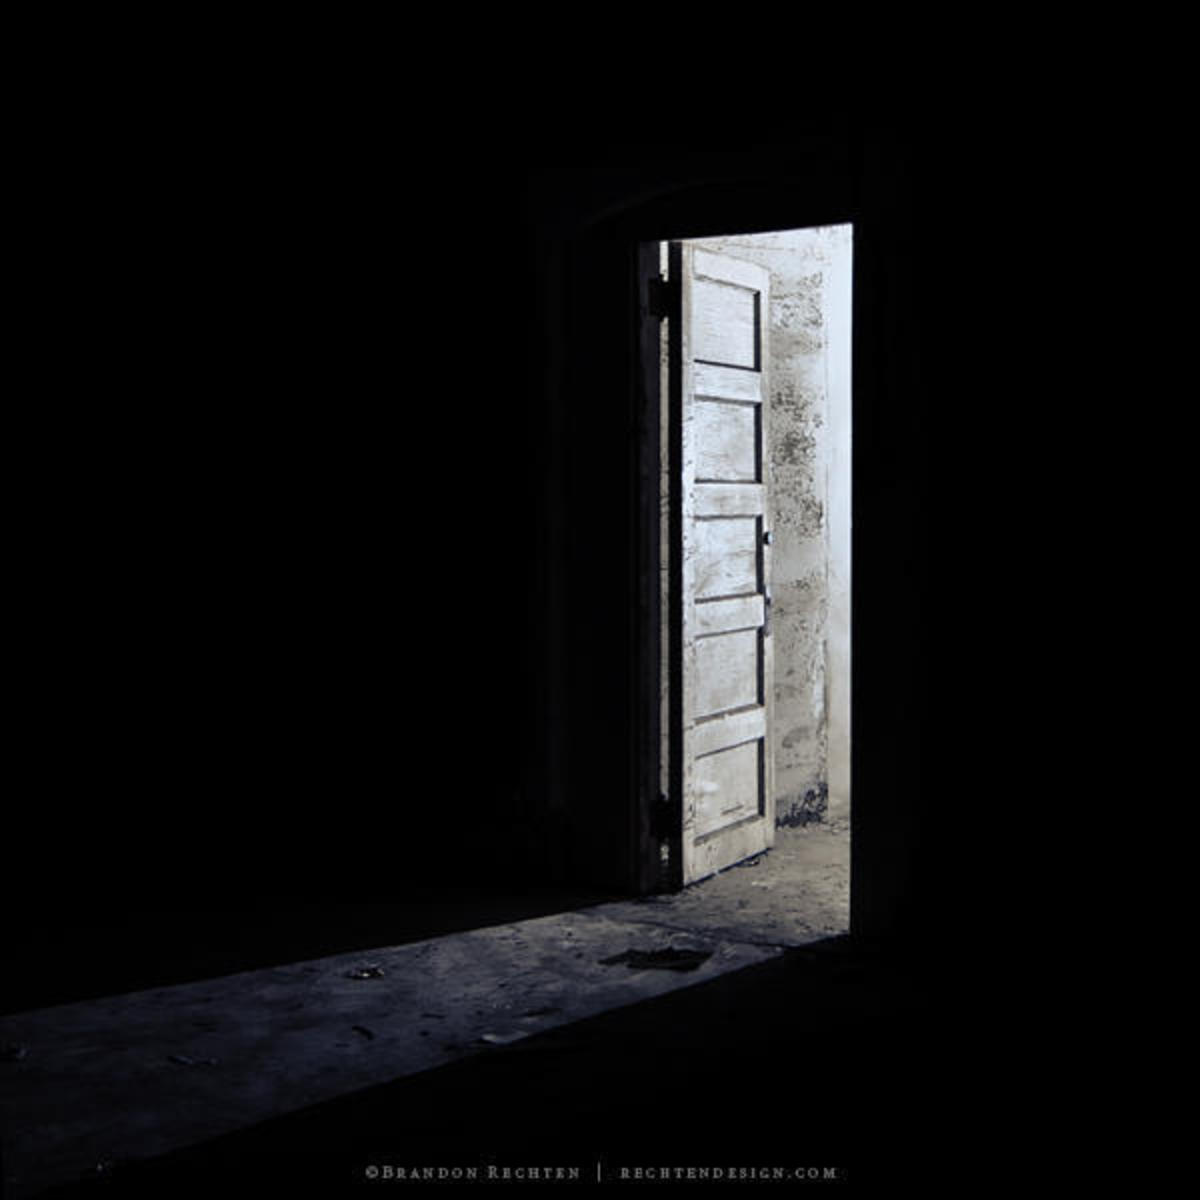 Shining in a Dark Place by Brandon Rechten